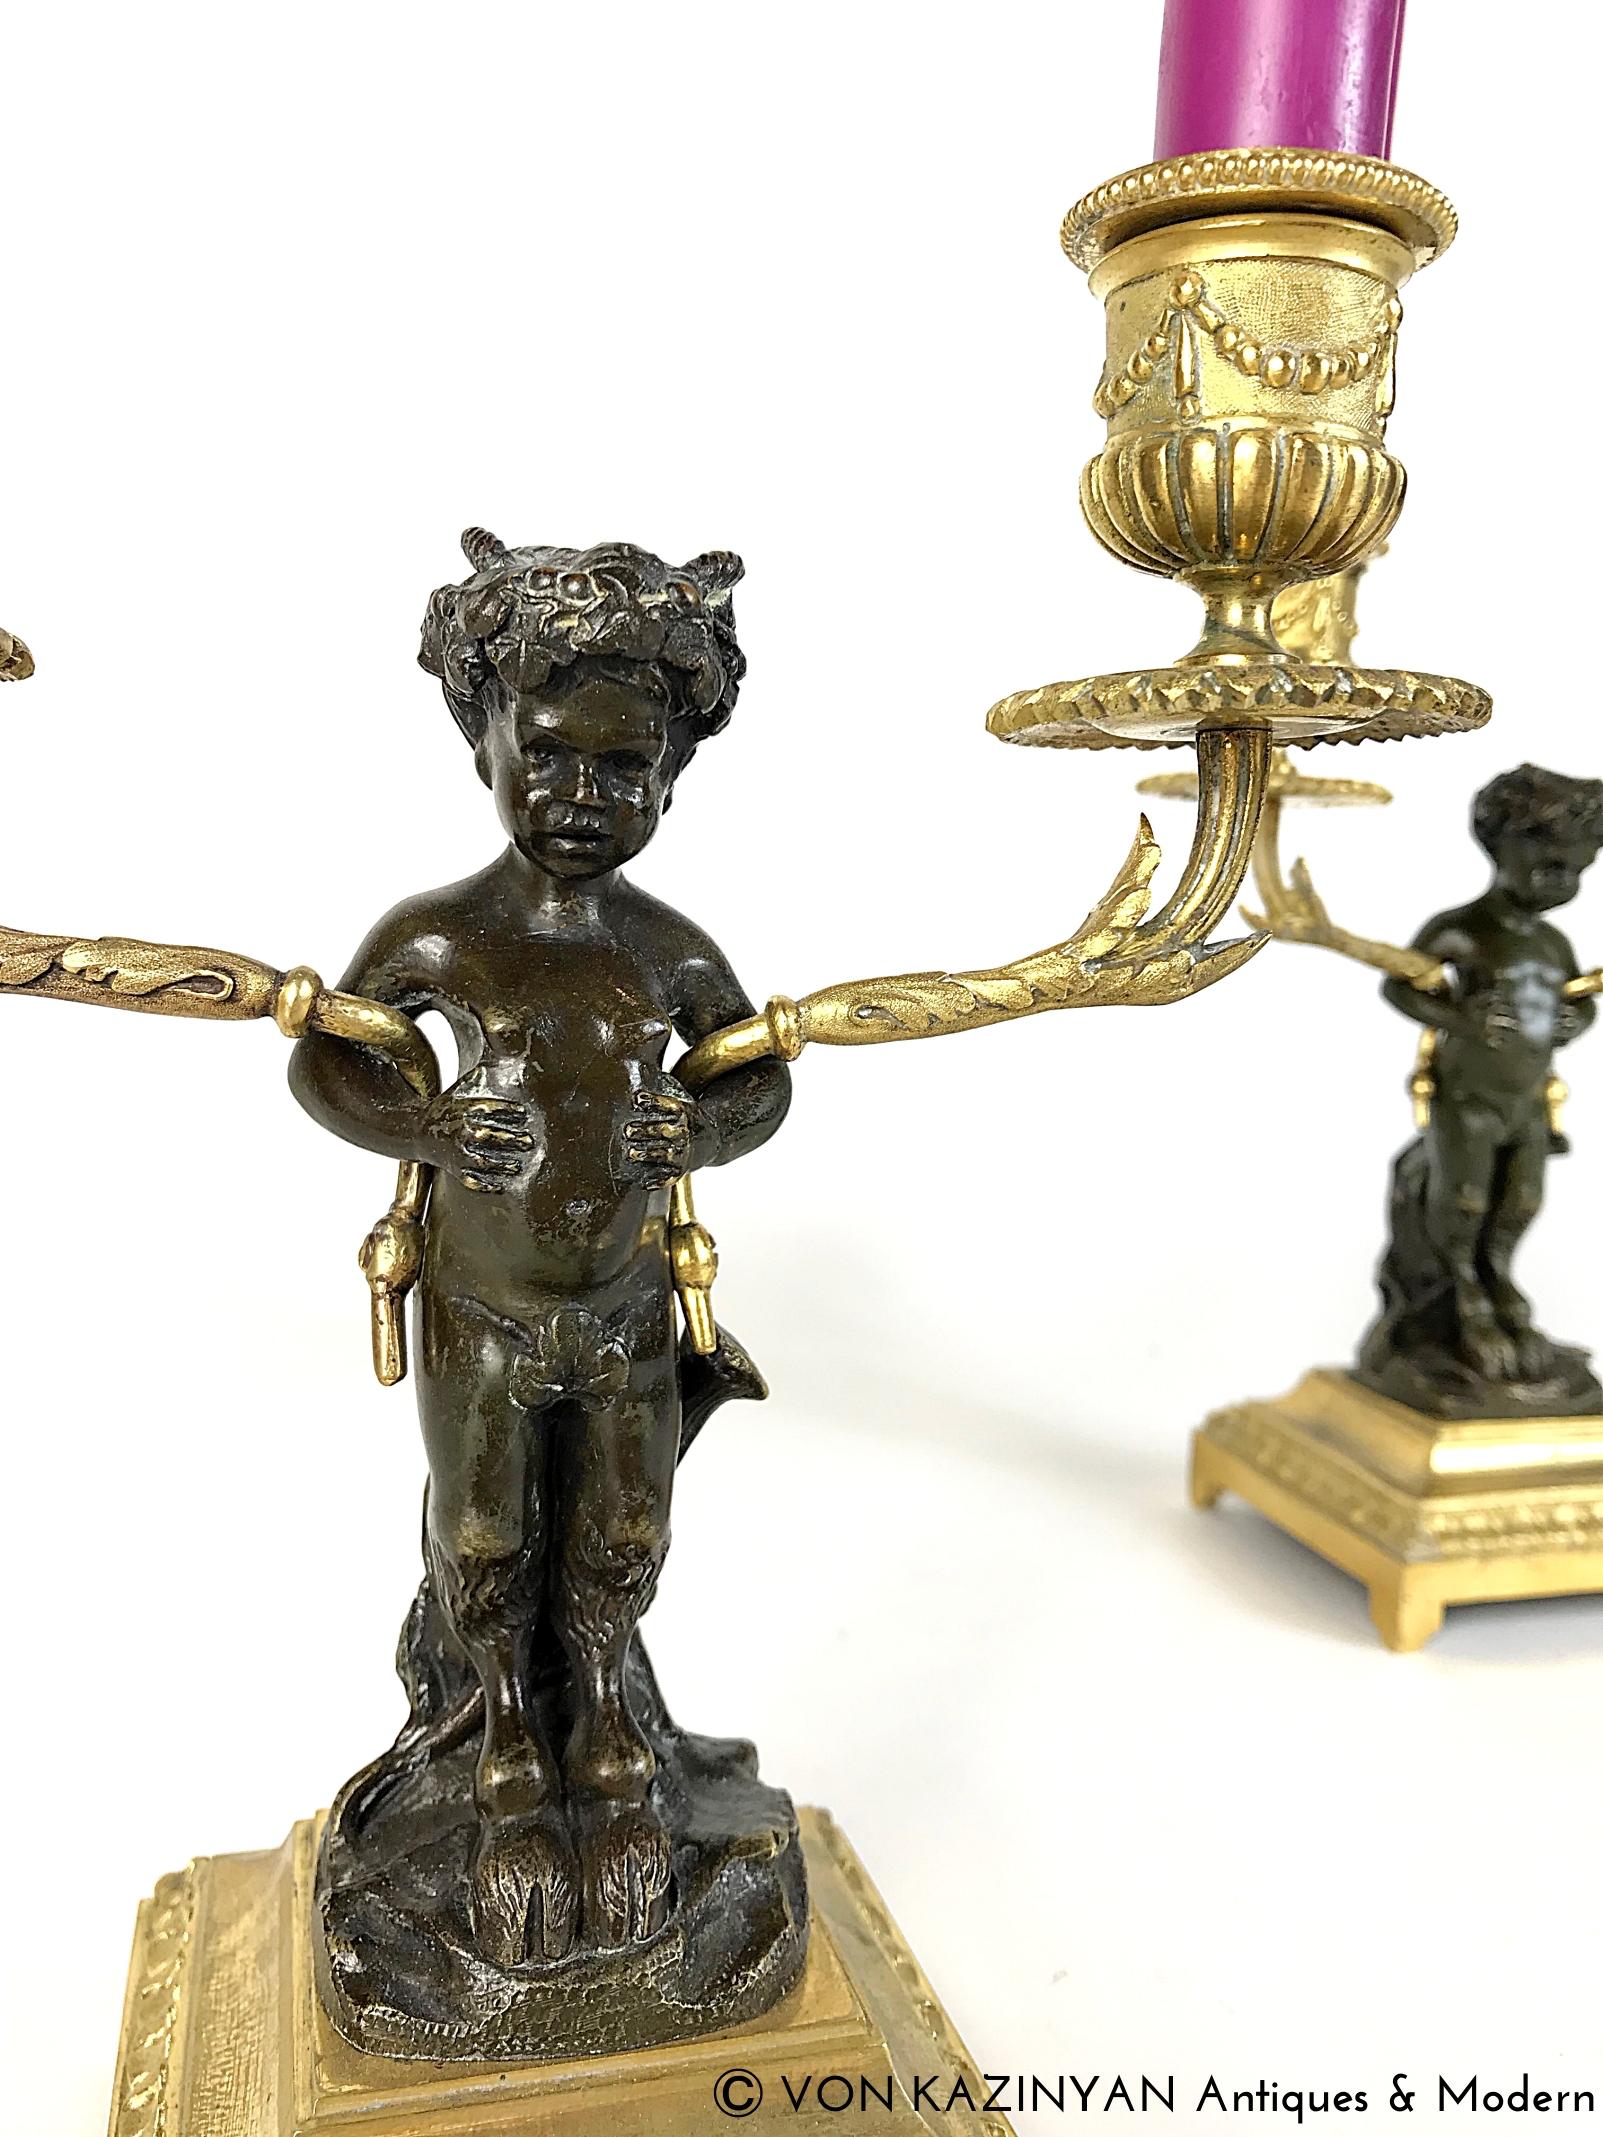 Paire de magnifiques candélabres français en bronze doré et patiné, fabriqués par l'Atelier Clodion au milieu du XIXe siècle. Représentant deux satyres en bronze patiné assis sur une souche d'arbre et tenant deux branches en bois doré qui mènent à